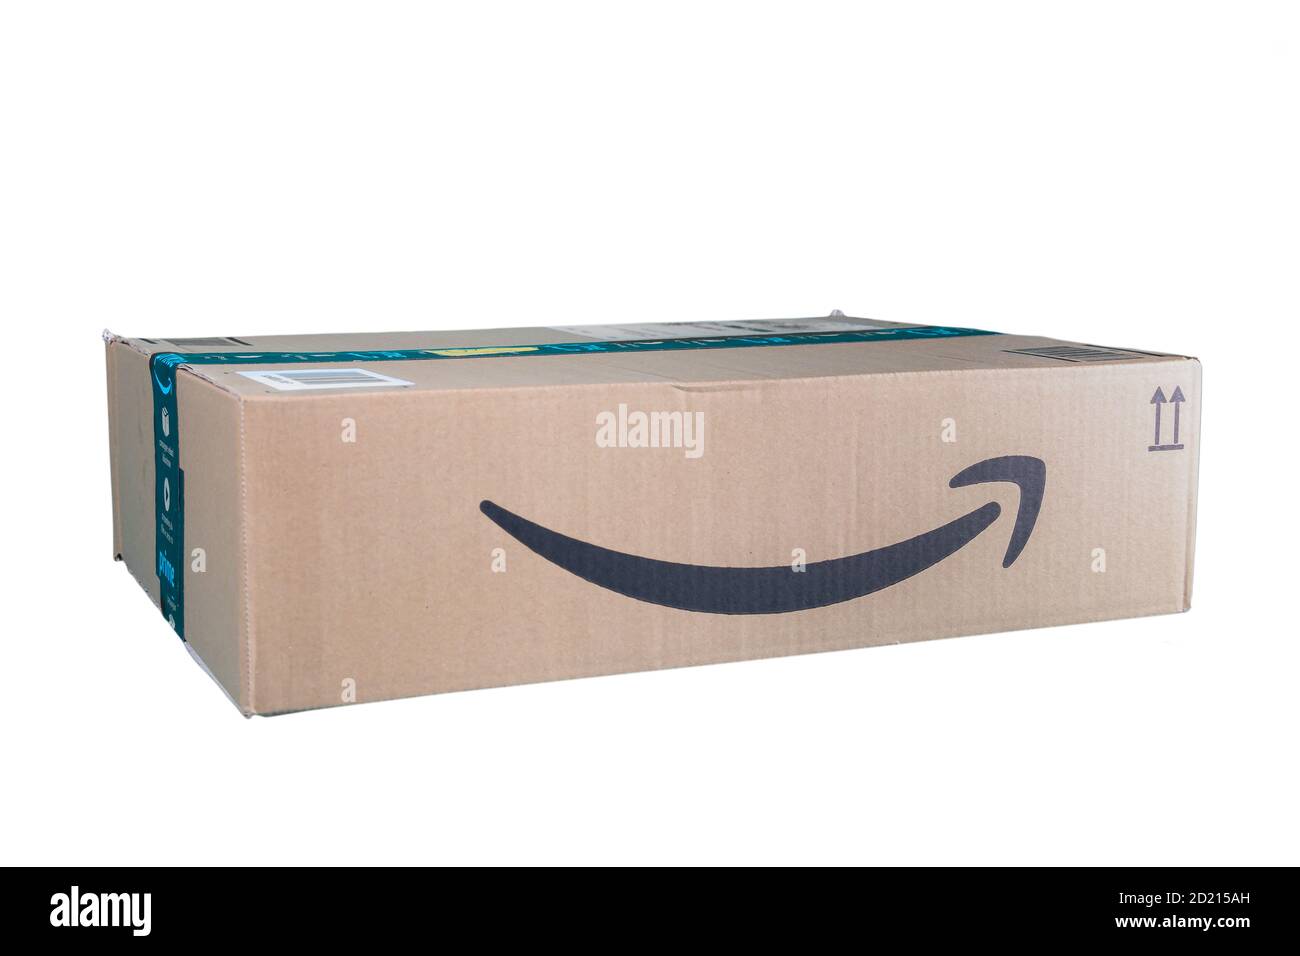 Huelva, Spanien - 5. Oktober 2020: Amazon Prime Paket auf weißem Hintergrund. Prime ist ein Service des Online-Händlers Amazon für eine schnellere Lieferung o angeboten Stockfoto